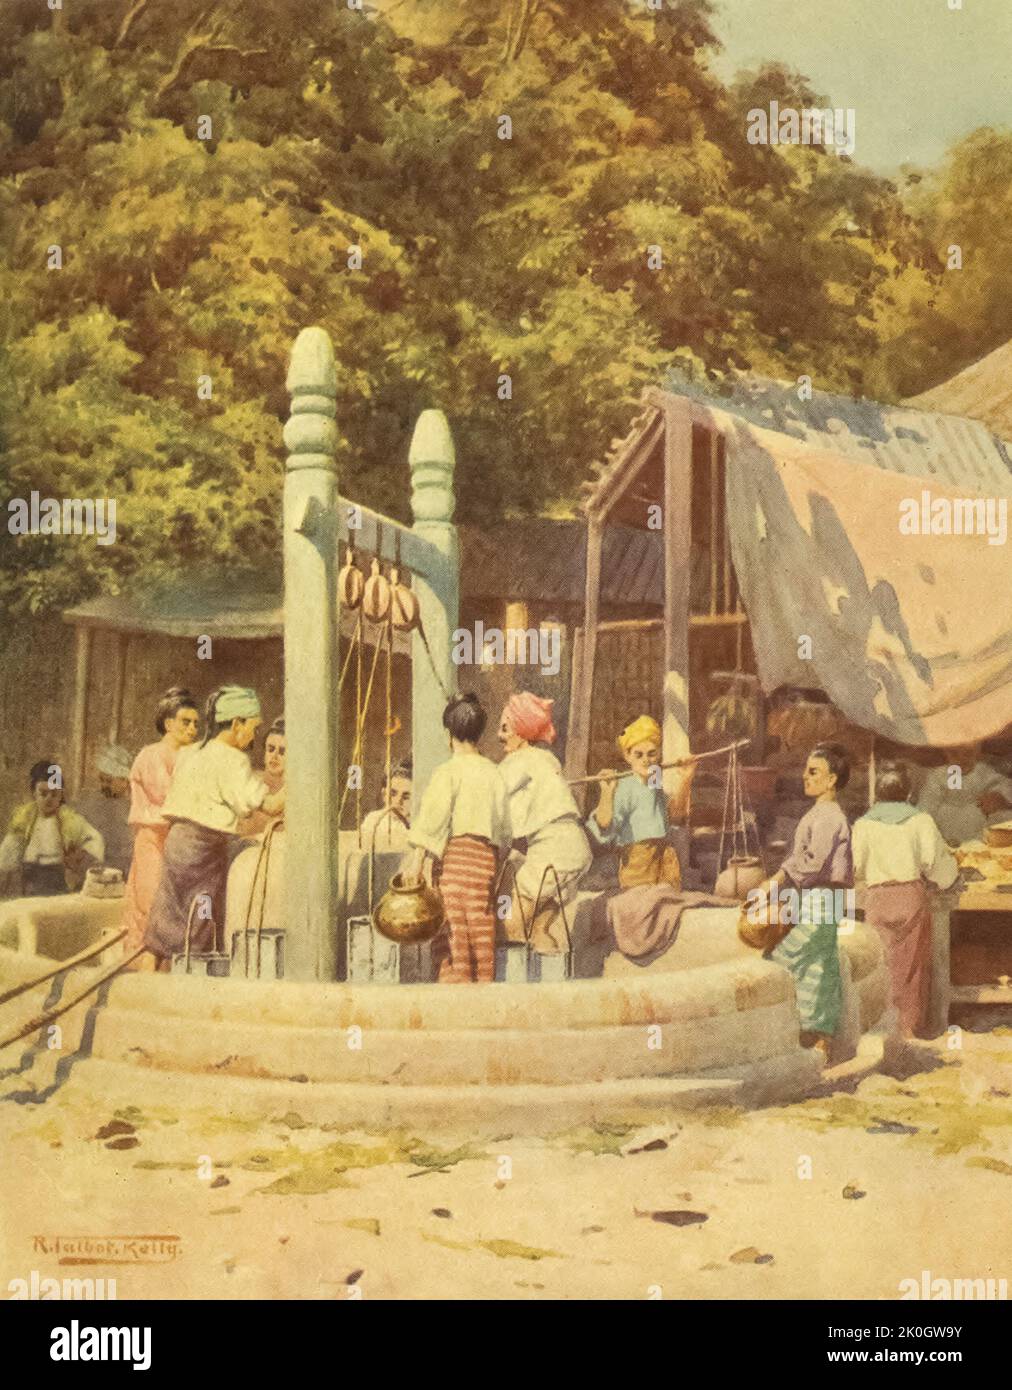 Am Brunnen aus dem Buch "Burma" gemalt und beschrieben von Kelly, R. Talbot (Robert Talbot), 1861-1934 Erscheinungsdatum 1905 Verlag London : Adam and Charles Black Stockfoto